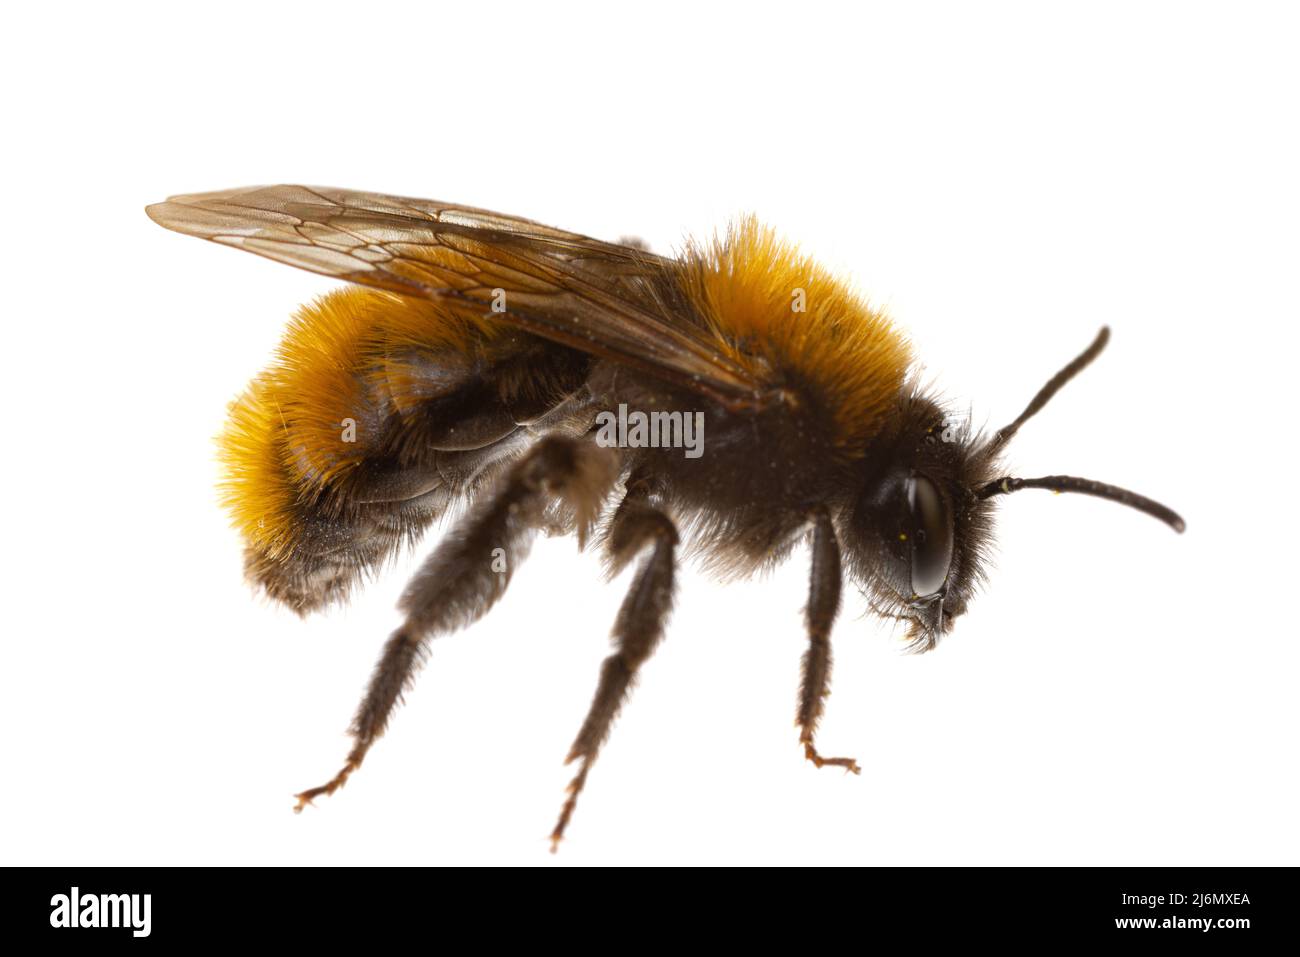 Insectes d'europe - abeilles : macro de l'abeille minière femelle ( Andrena fulva german Rotpelzige Sandbiene) isolée sur fond blanc vue latérale Banque D'Images